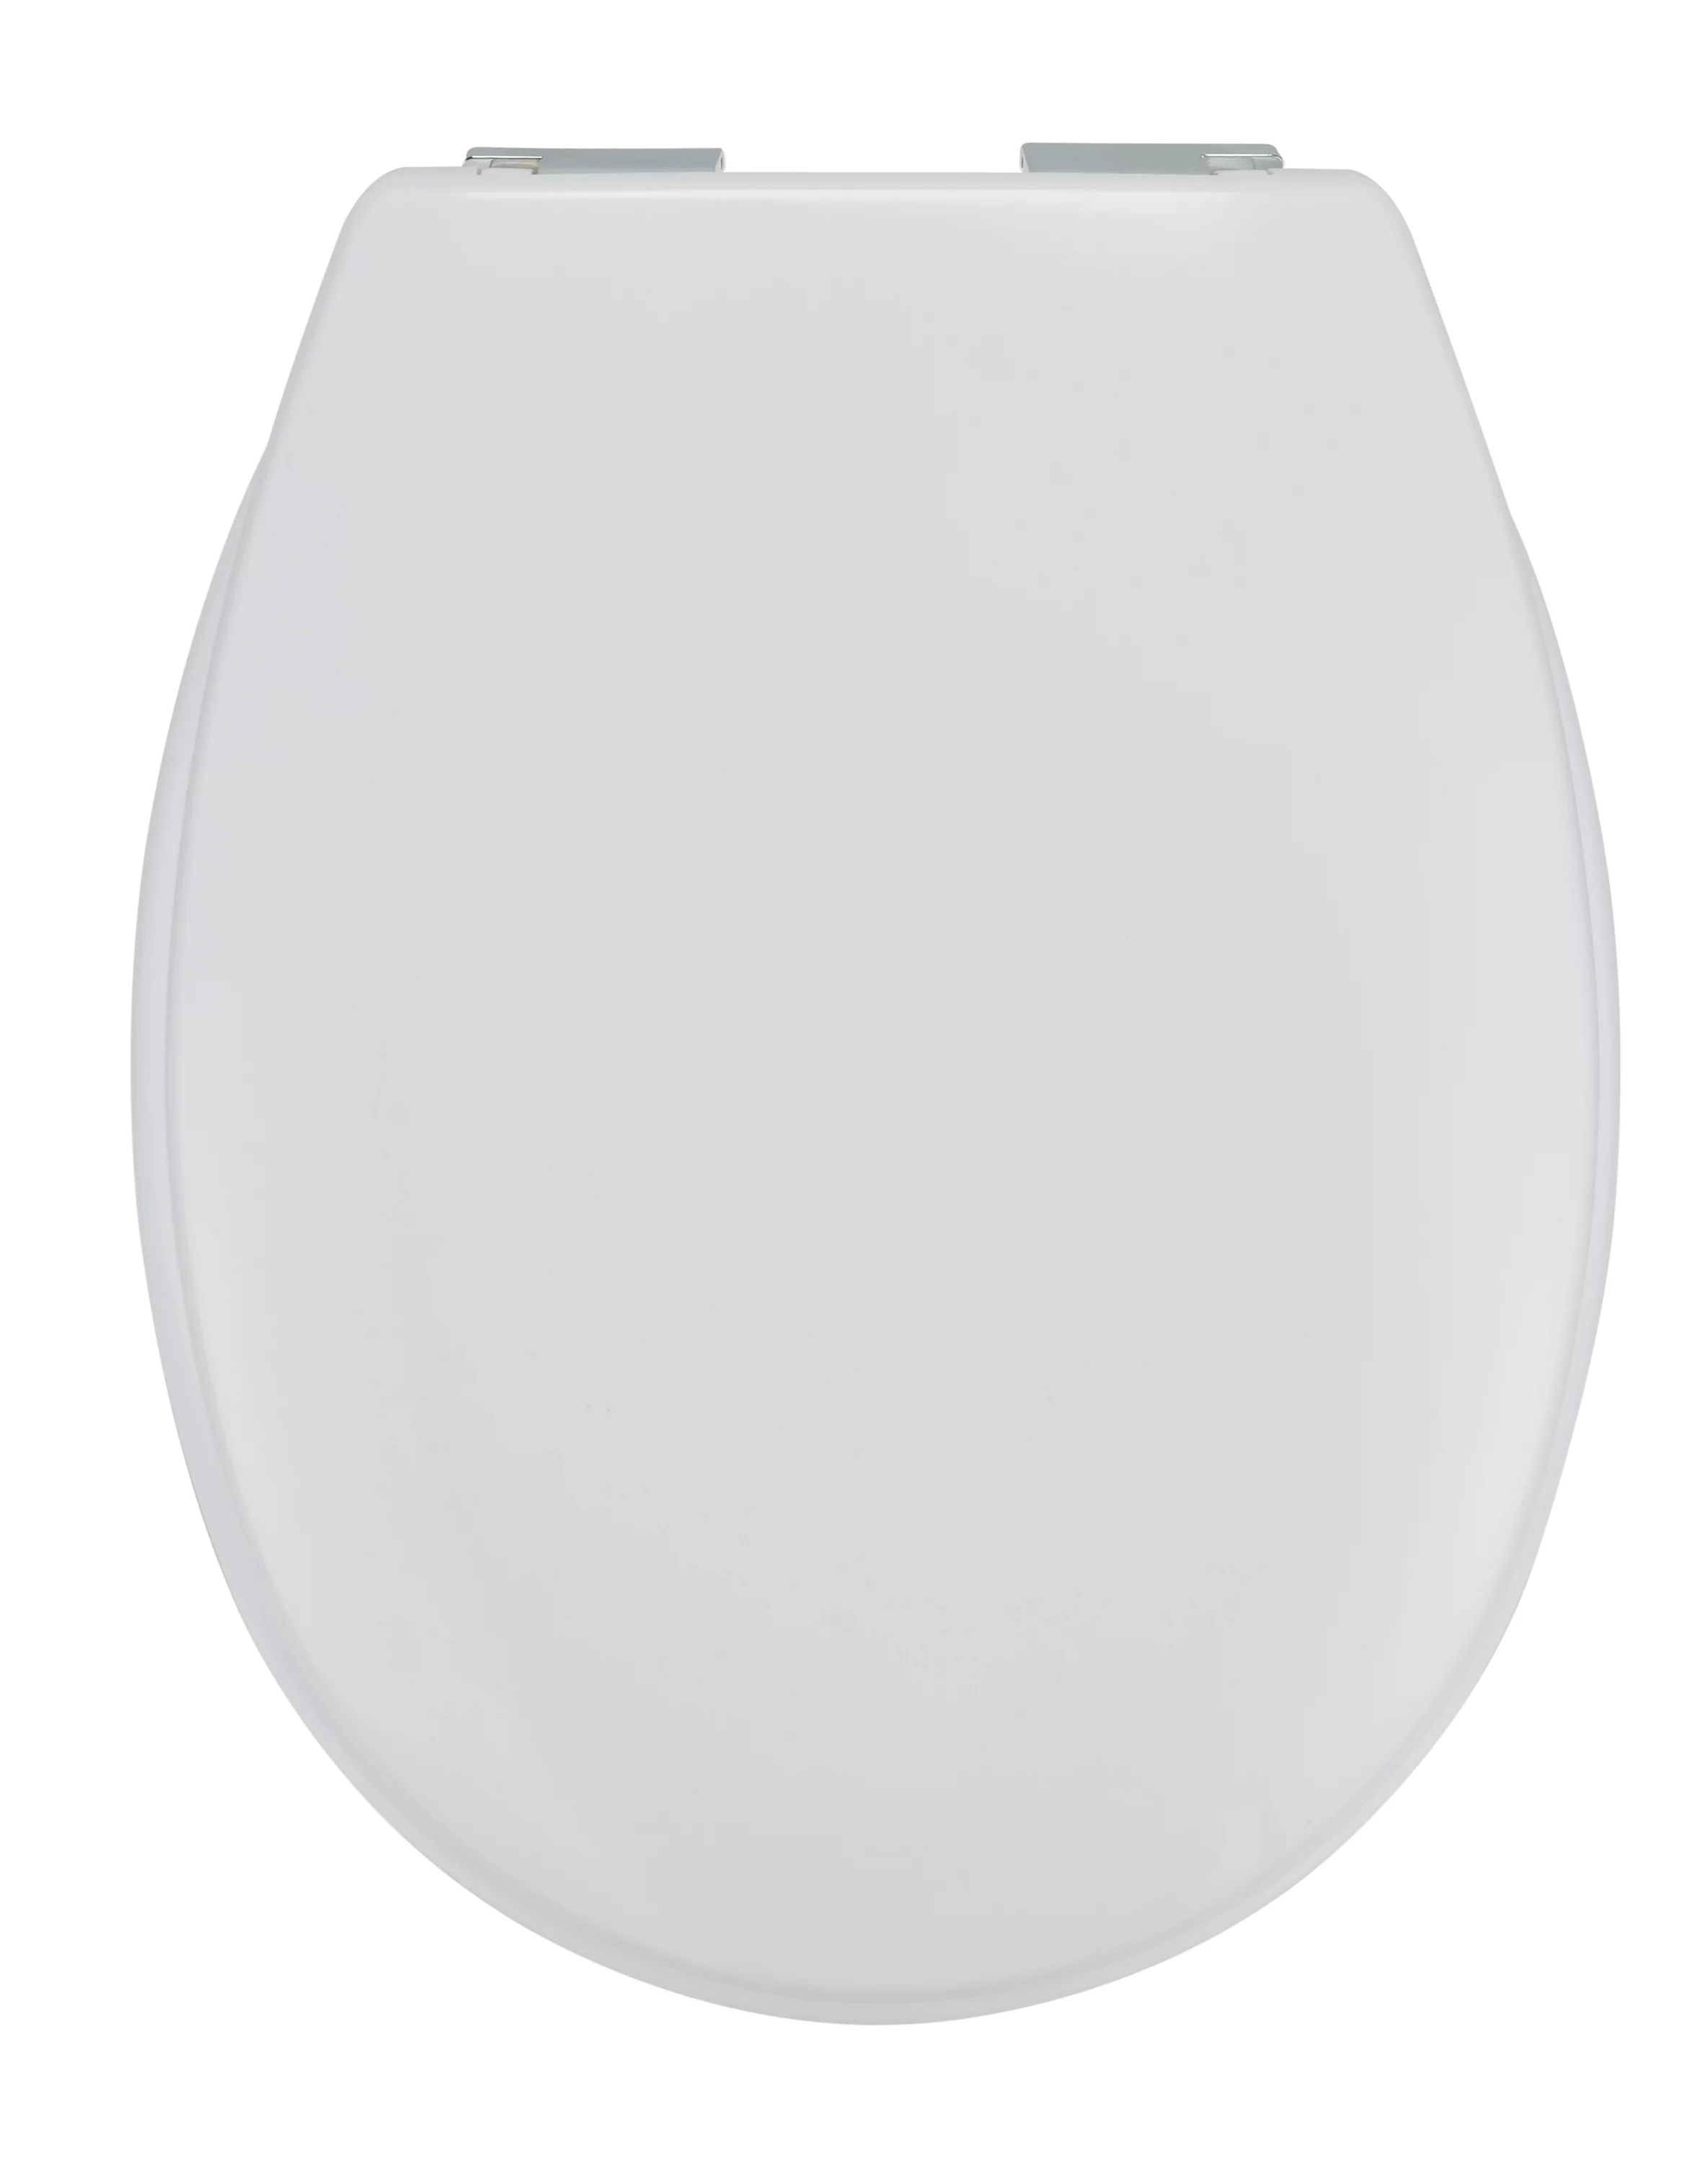 toilettendeckel,-soft-close-/-absenkautomatik-44-x-37-x-3.3cm-weiss